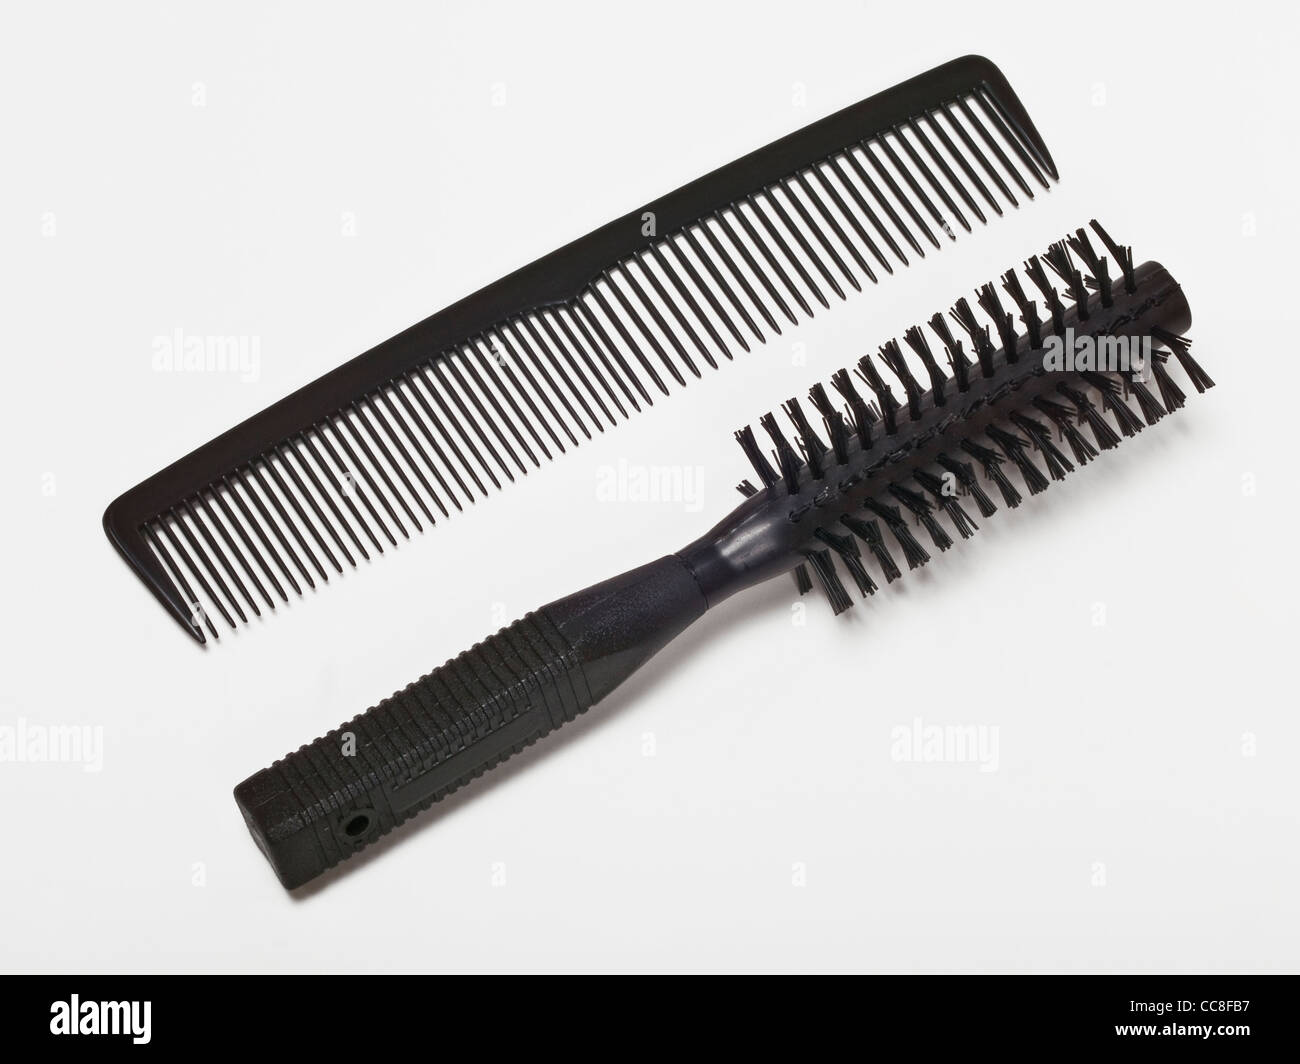 Detailansicht von Kamm und Haarbürste | Detail photo of a comb and a hairbrush Stock Photo